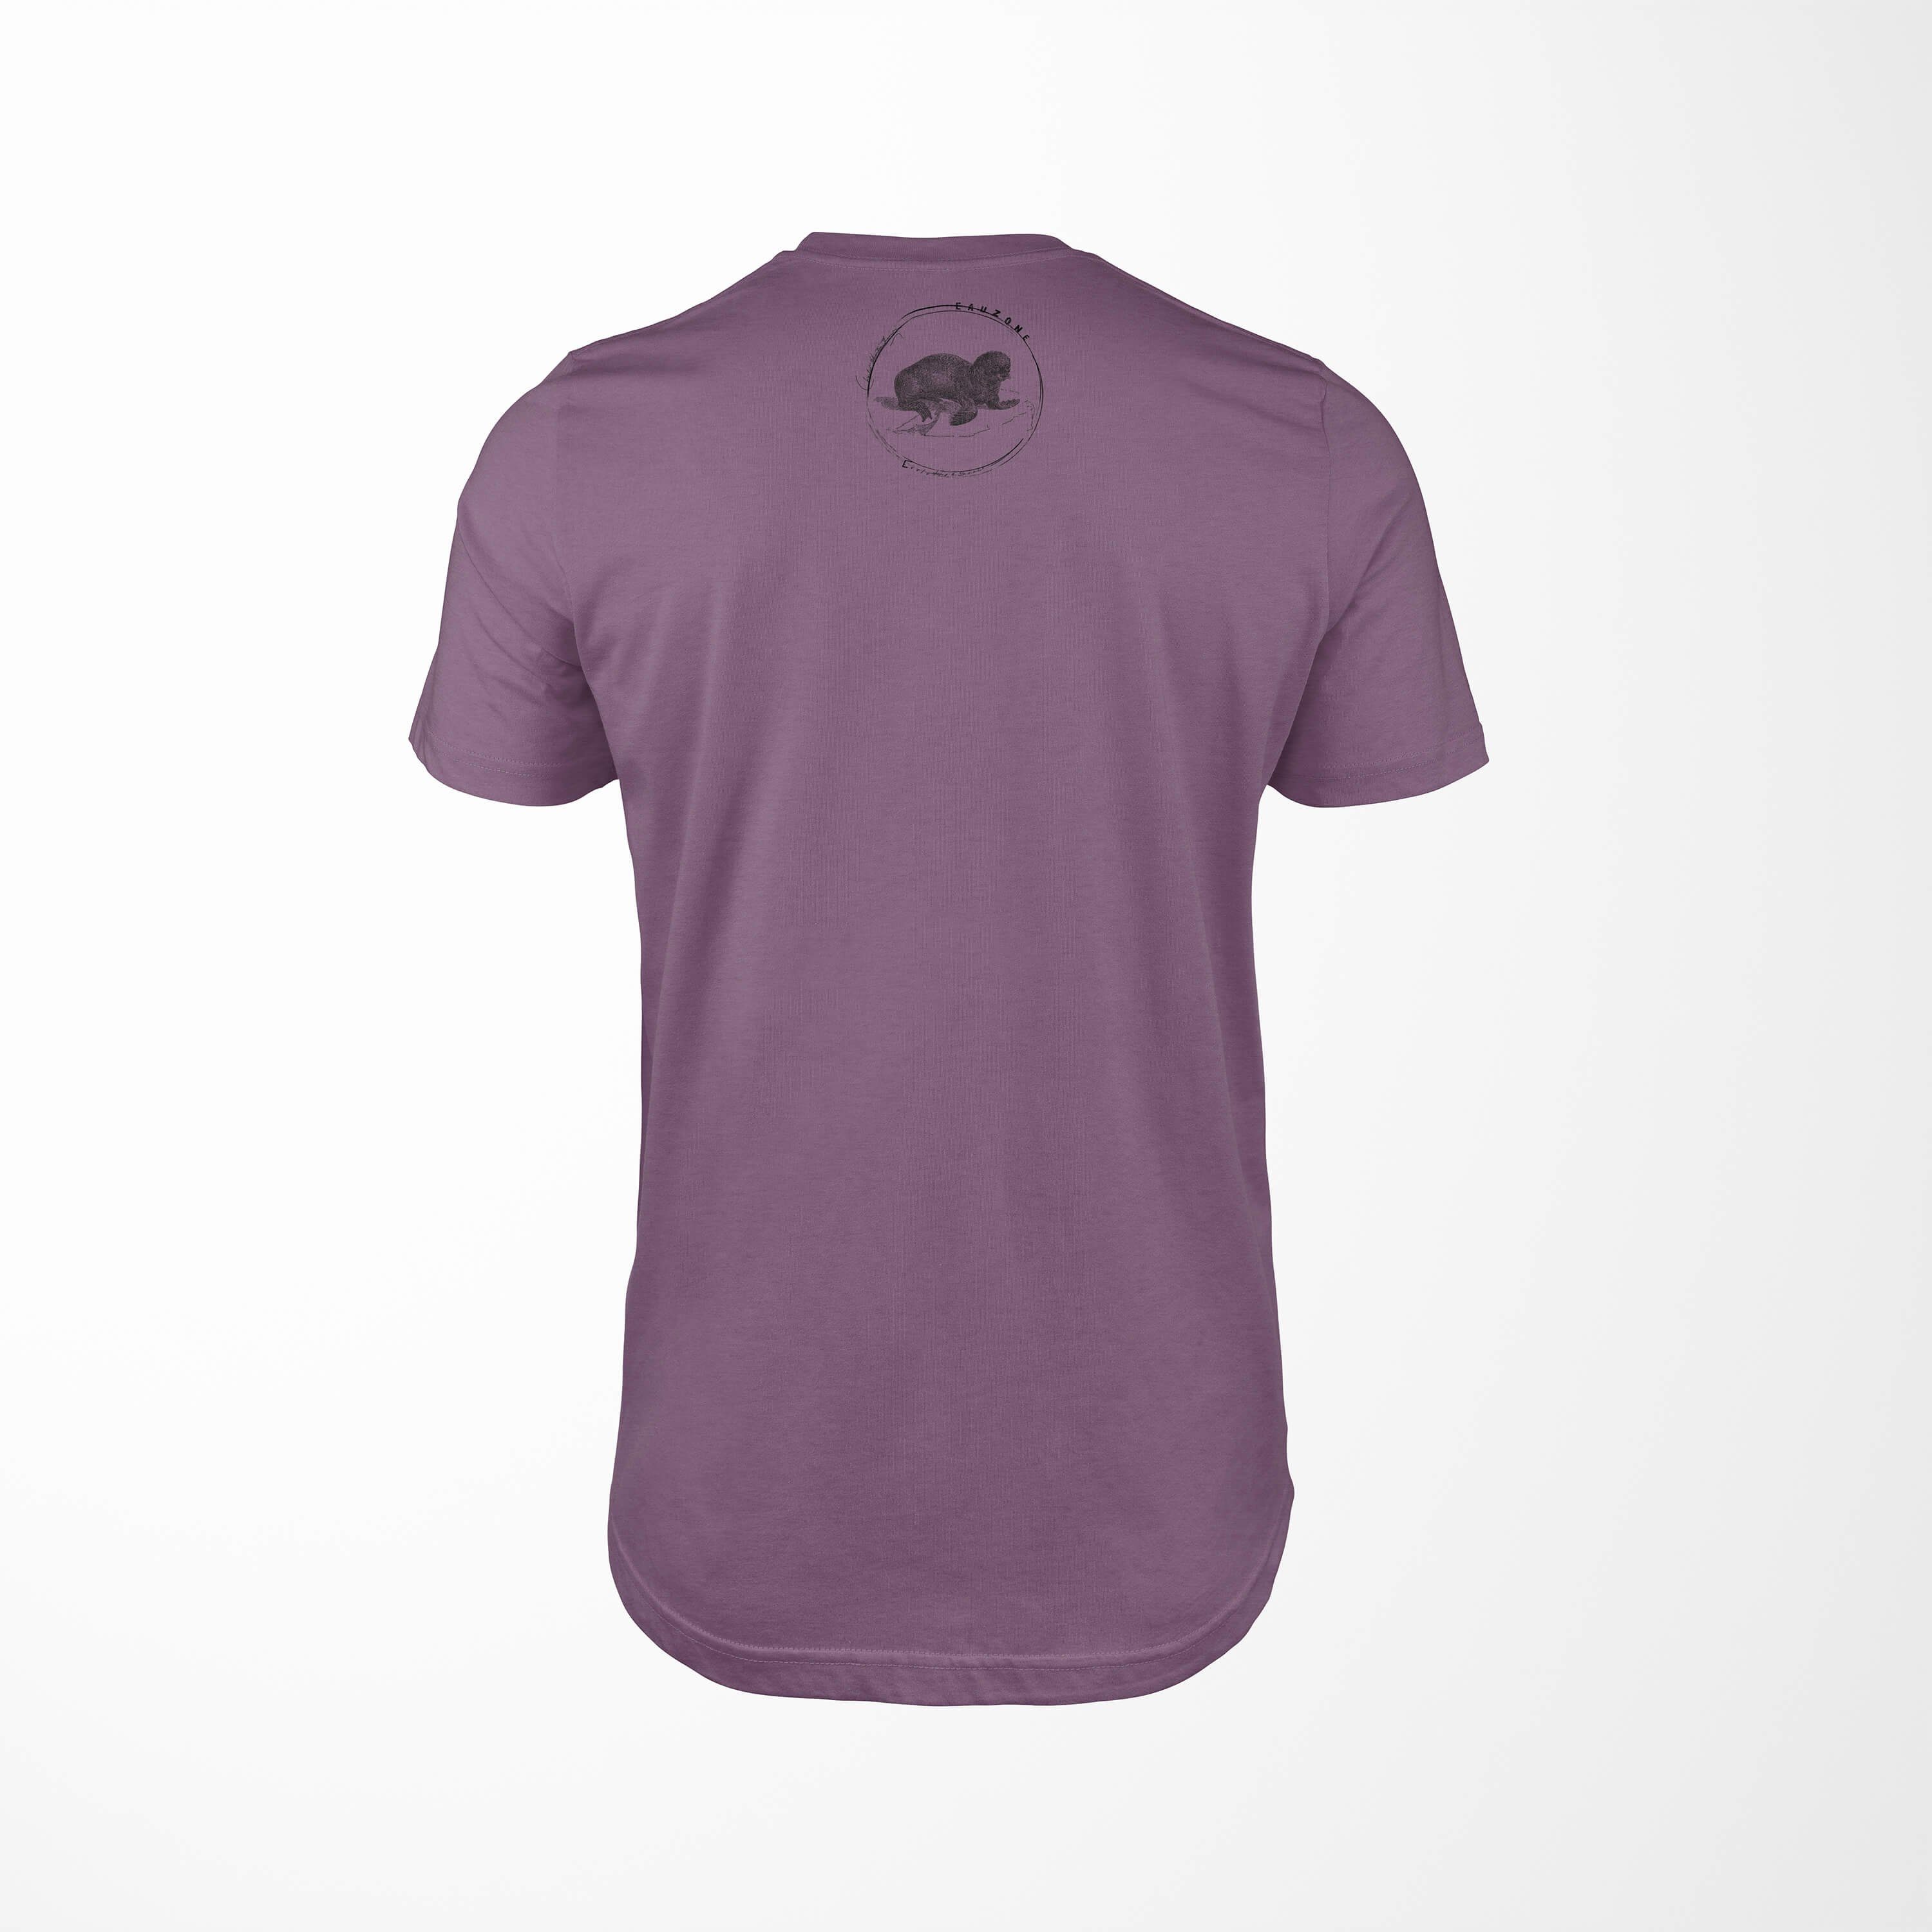 Art T-Shirt Shiraz Evolution Sinus T-Shirt Herren Seelöwe